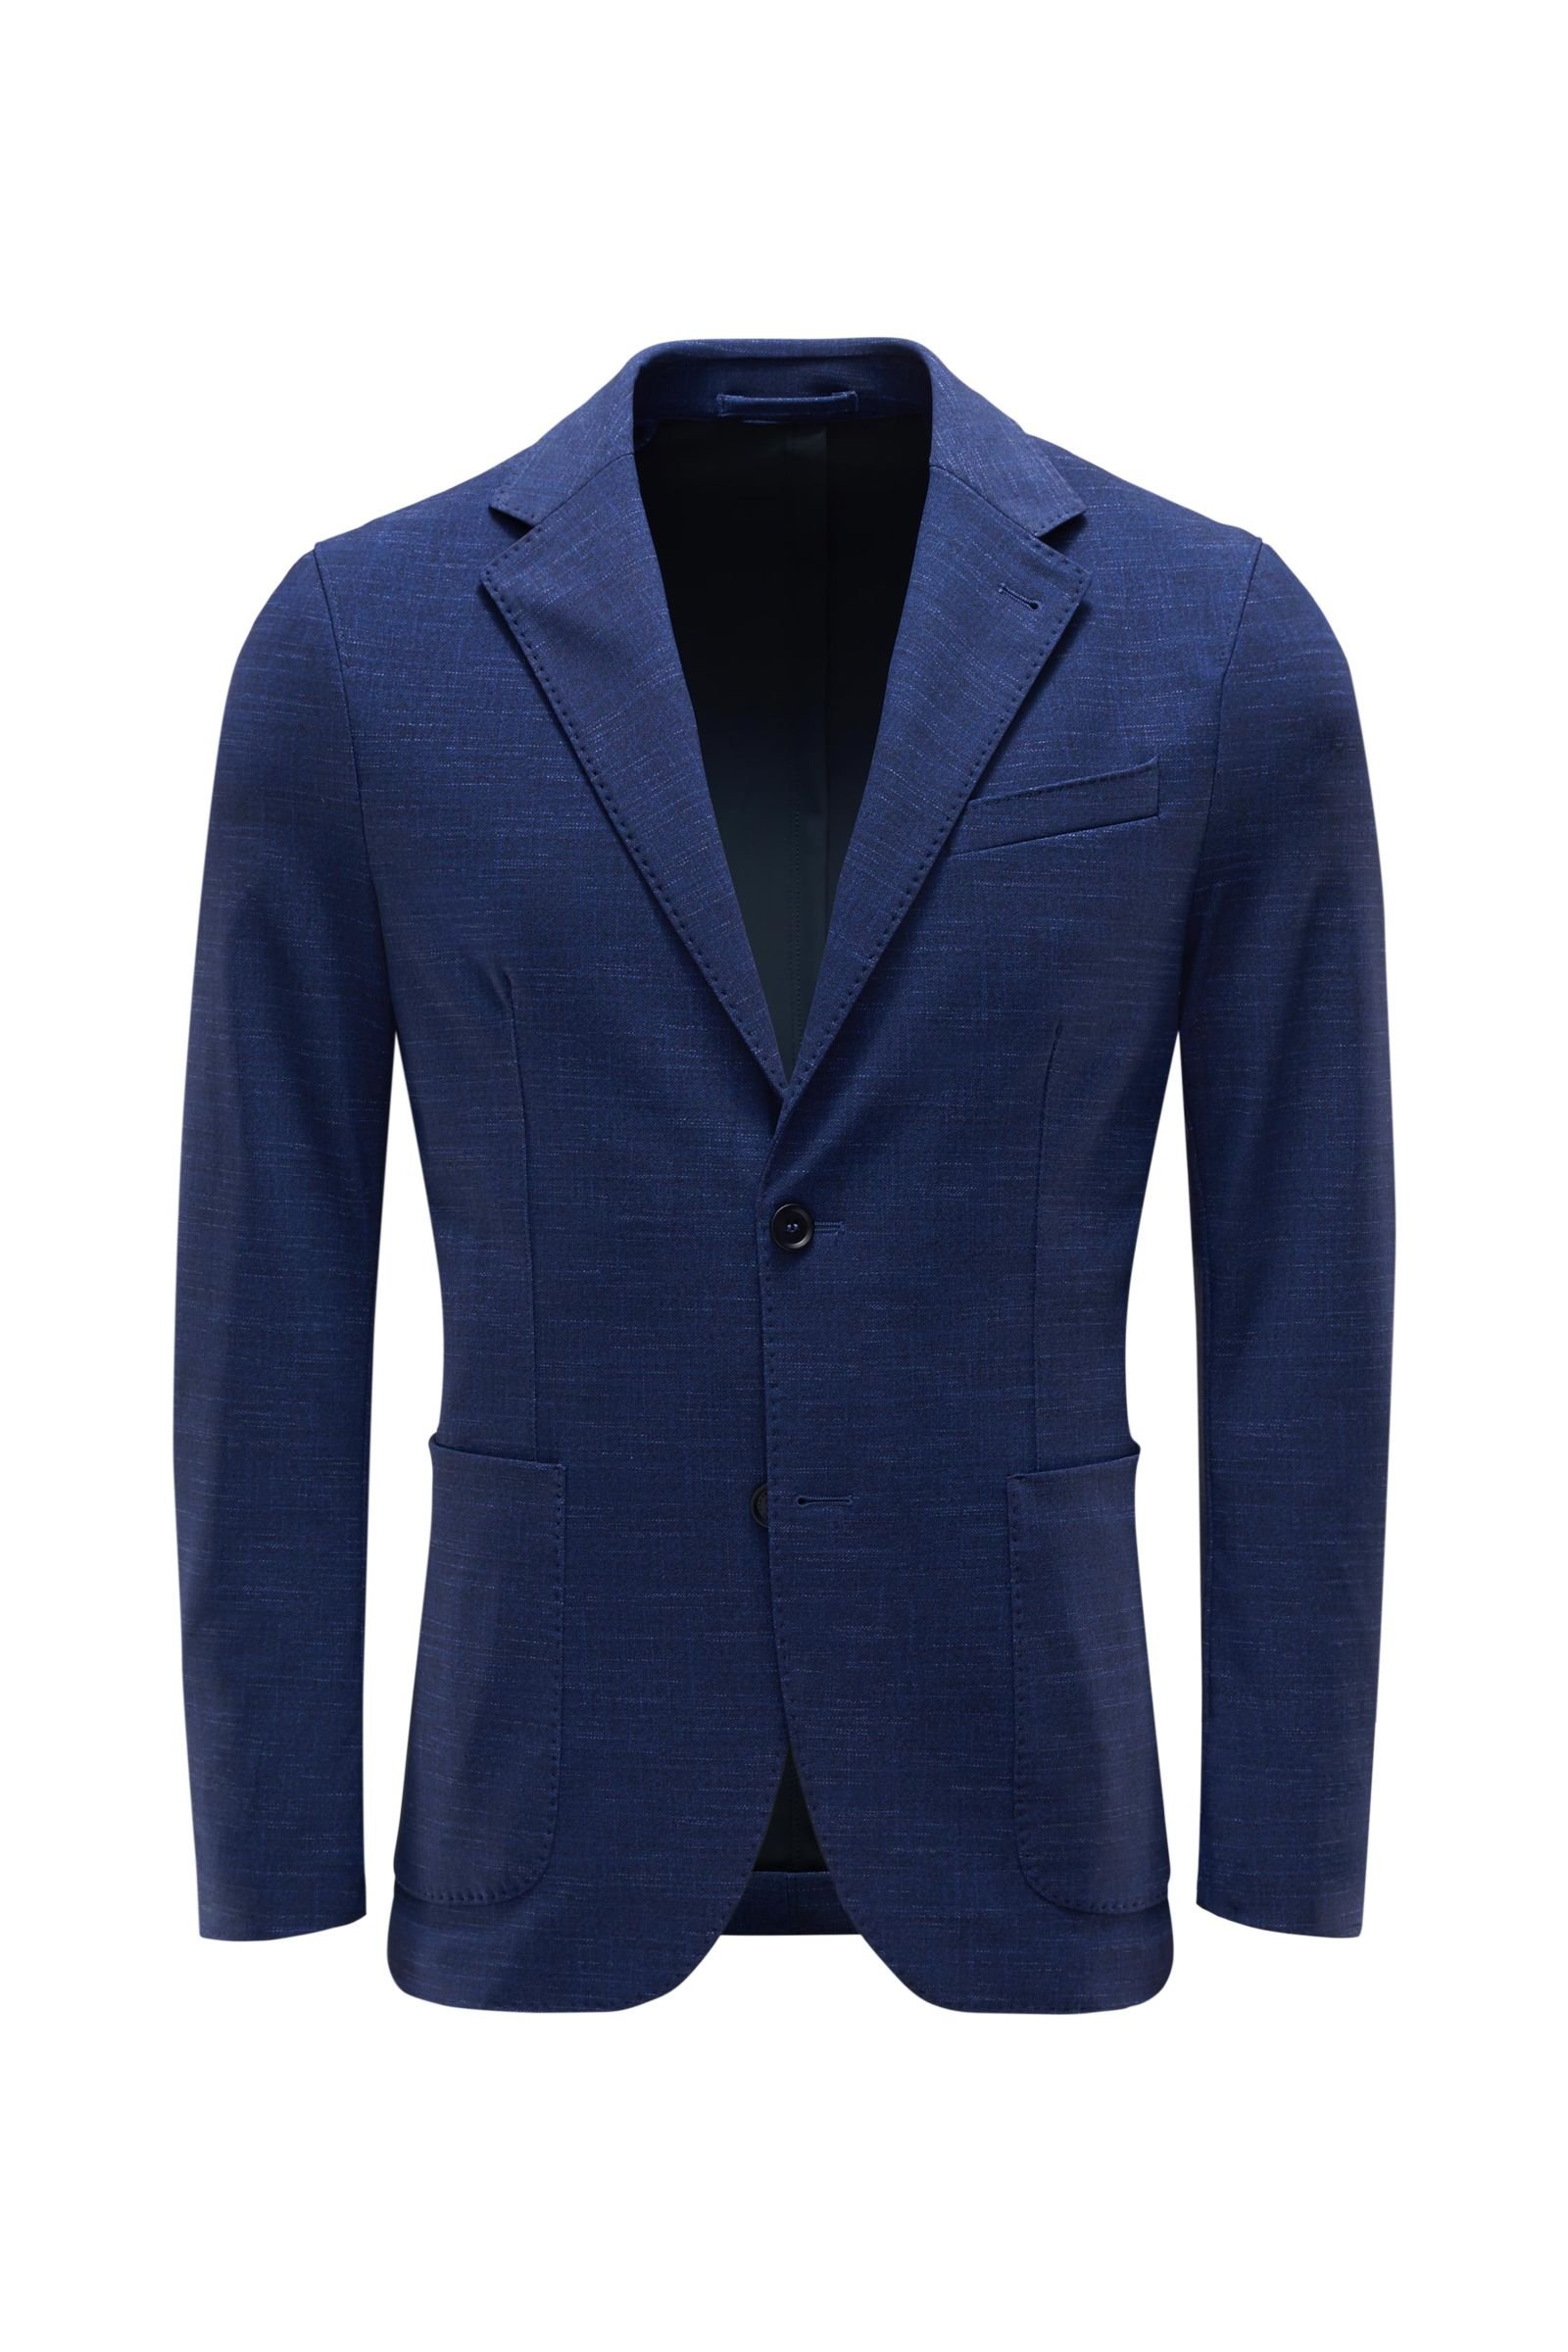 Jersey smart-casual jacket 'Dante' dark blue